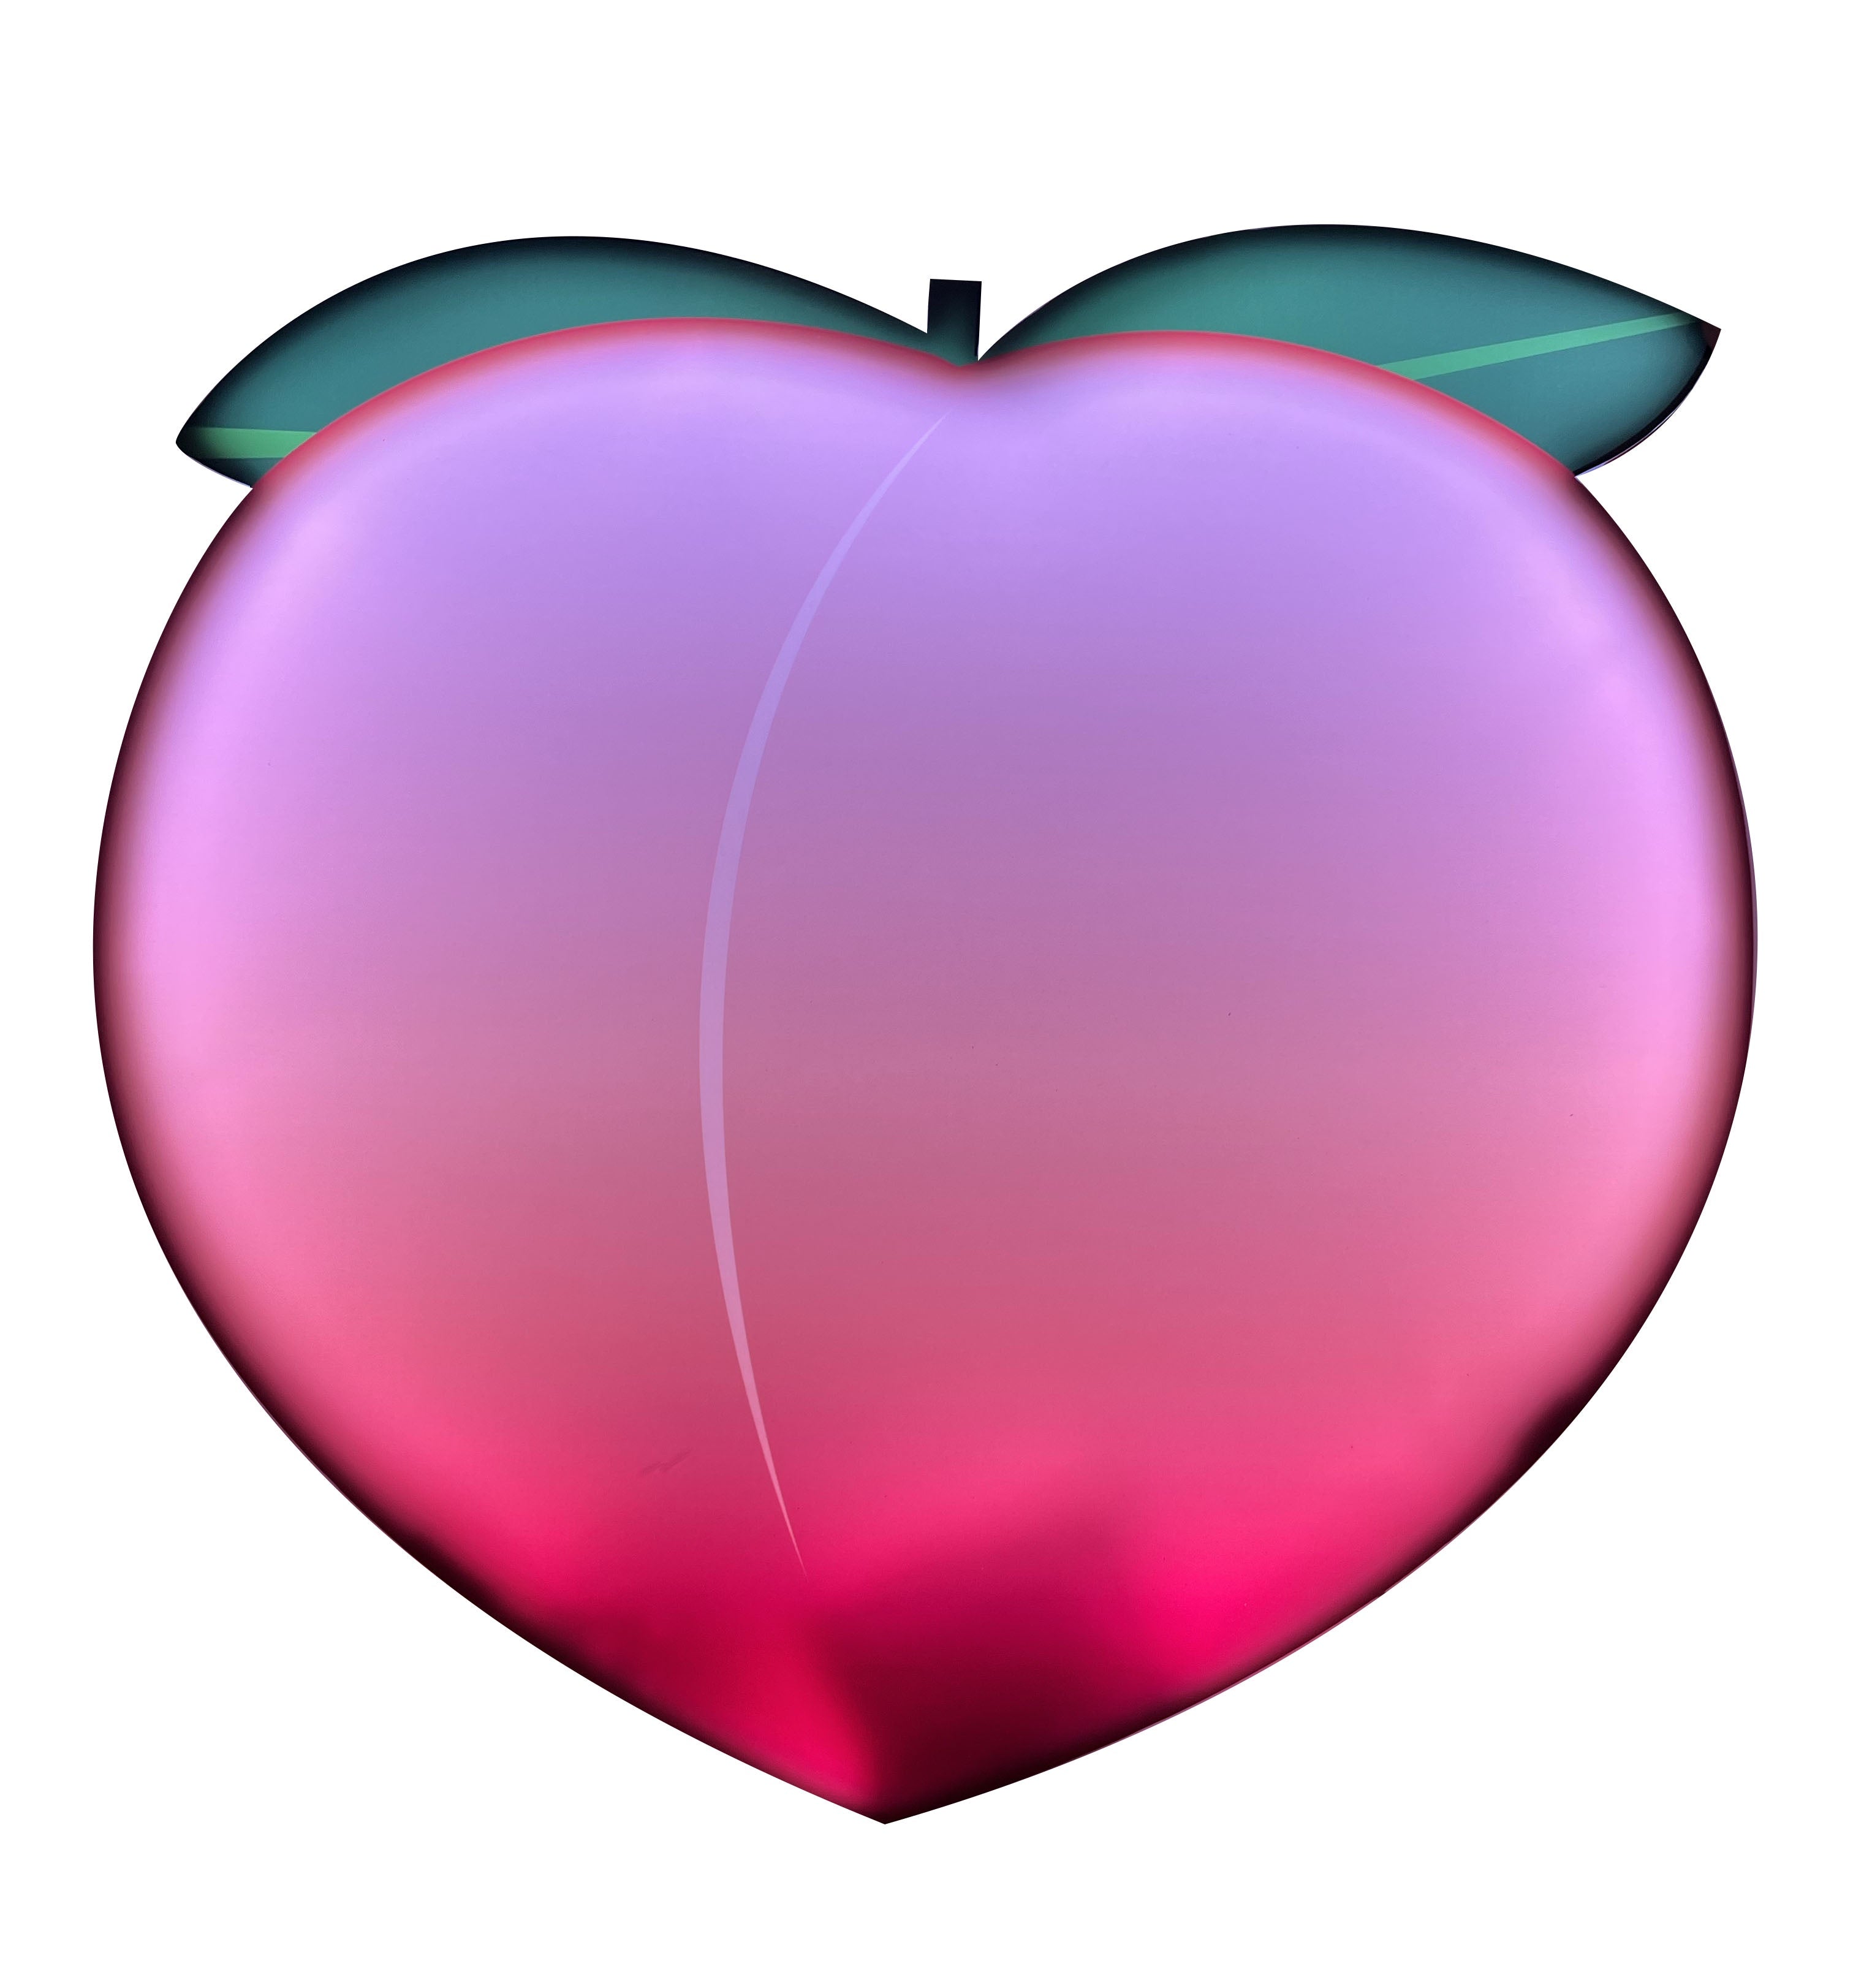 Emoji Peach